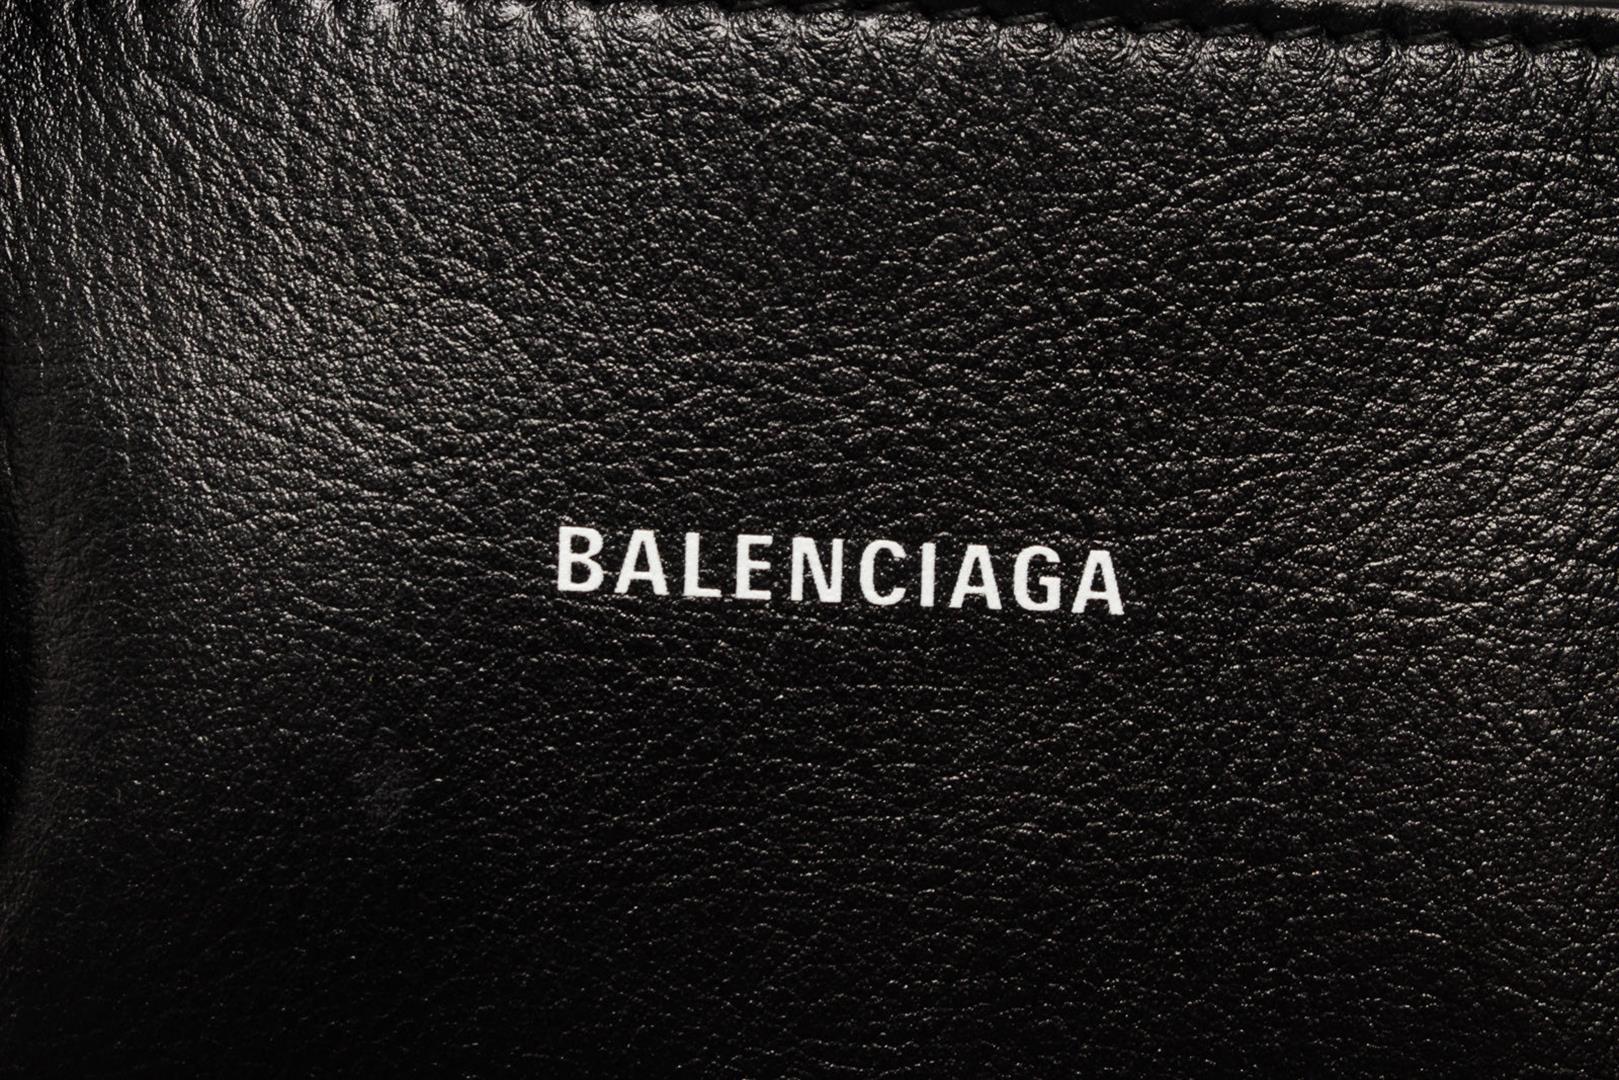 Balenciaga Logo Ville Bag Leather Small Black